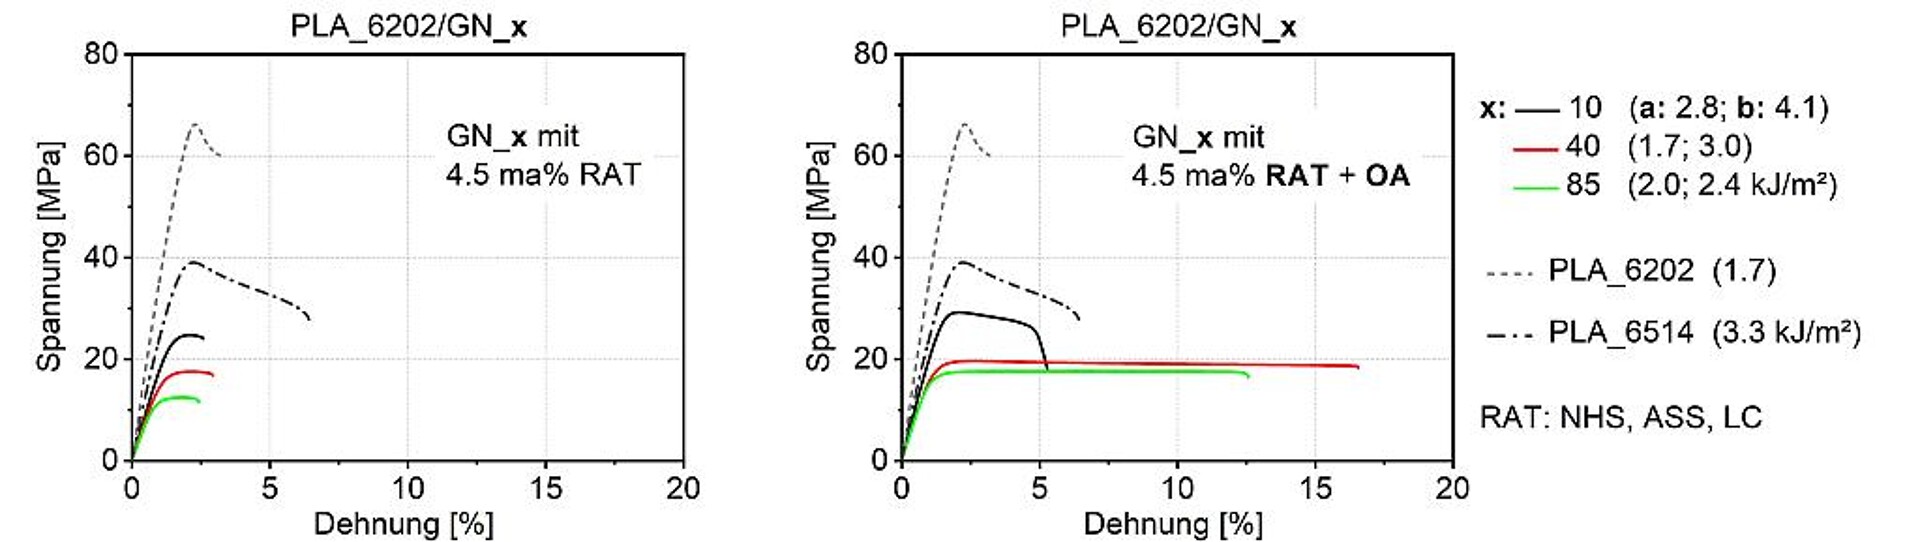 Spannungs-Dehnungsdiagramme für PLA_6202-Blends mit 40 Ma% GN_10, GN_40 und GN_85; links: mit 4,5 Ma% RAT, rechts: mit 4,5 Ma% RAT als auch OA. (Abb.: KUZ)